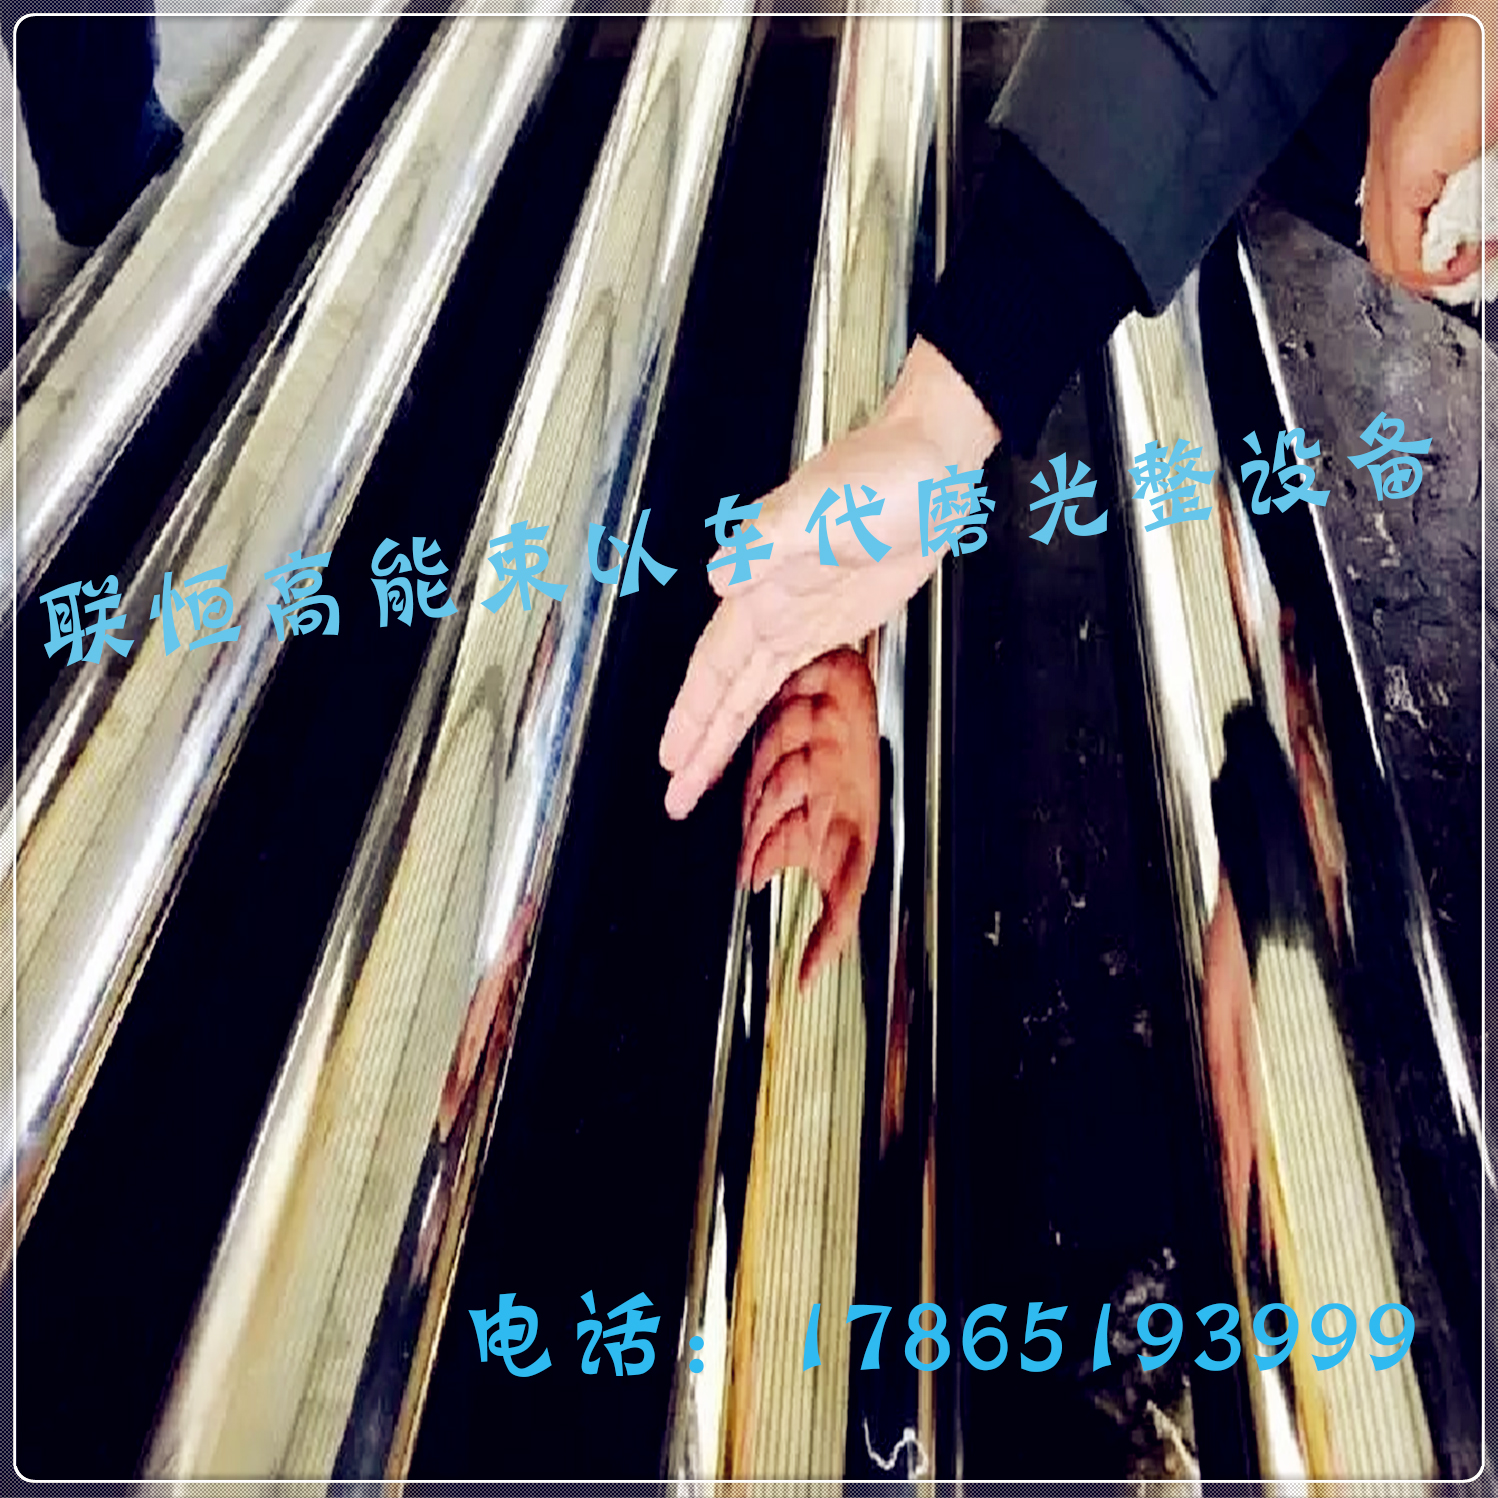 电机轴磨床主轴磨床-外圆磨床型号-上海数控外圆磨床厂家图片